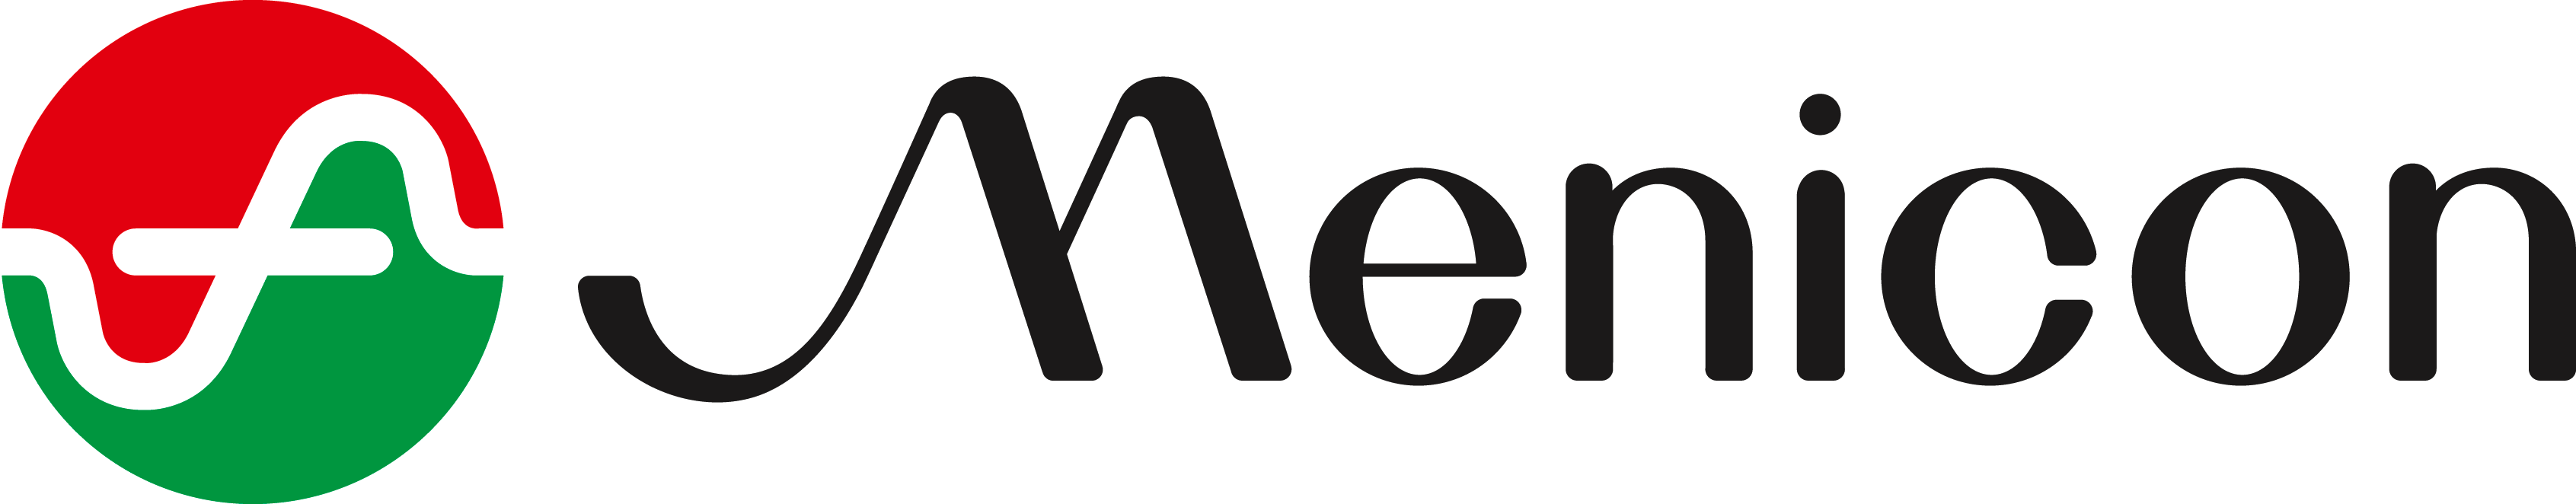 Menicon Logo